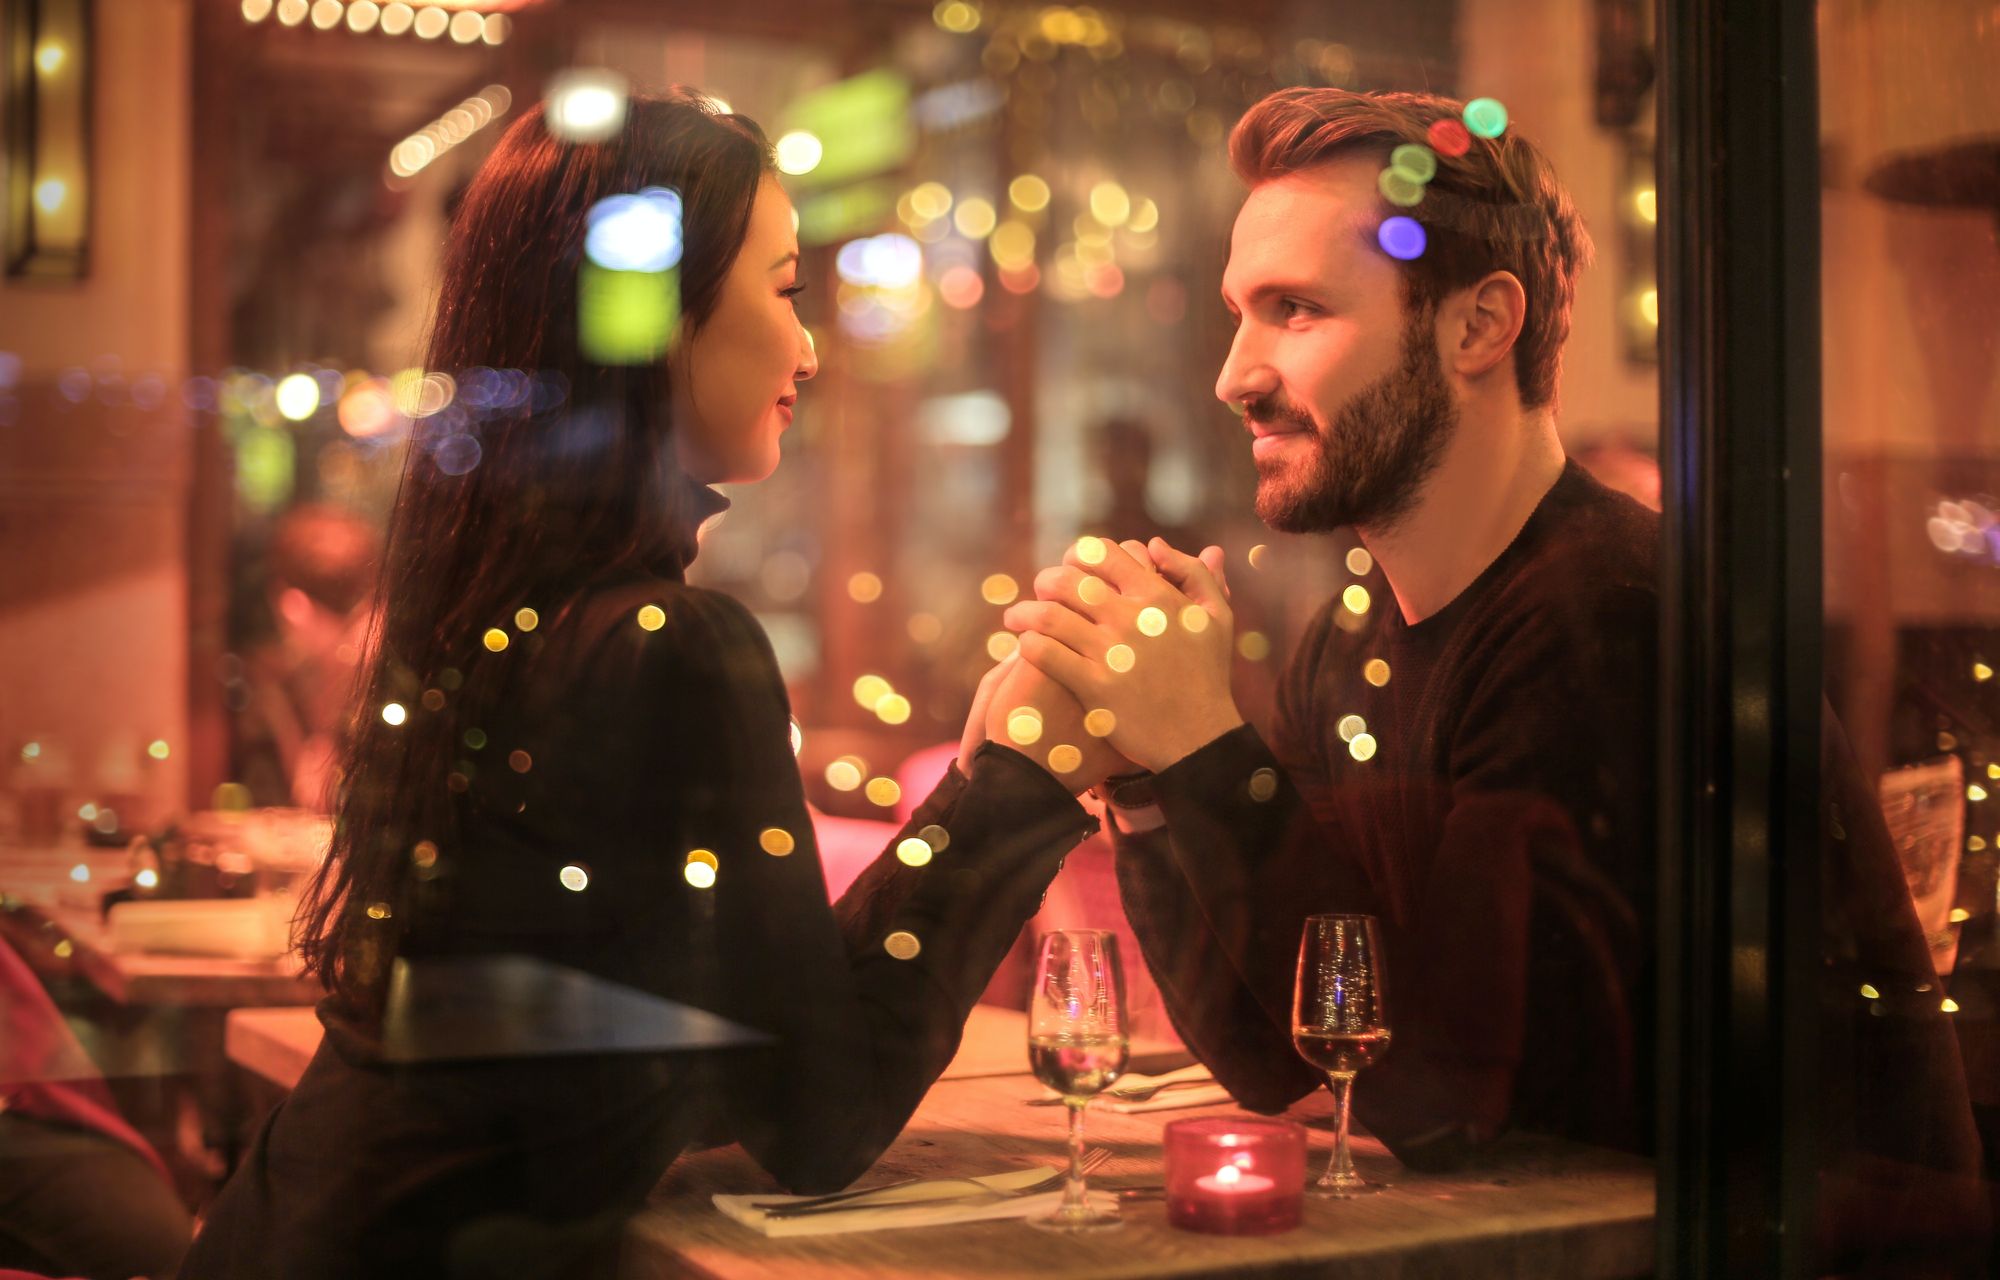 Foto colorida de casal sentados em restaurante. O homem segura as mãos da mulher e olha profundamente em seus olhos.